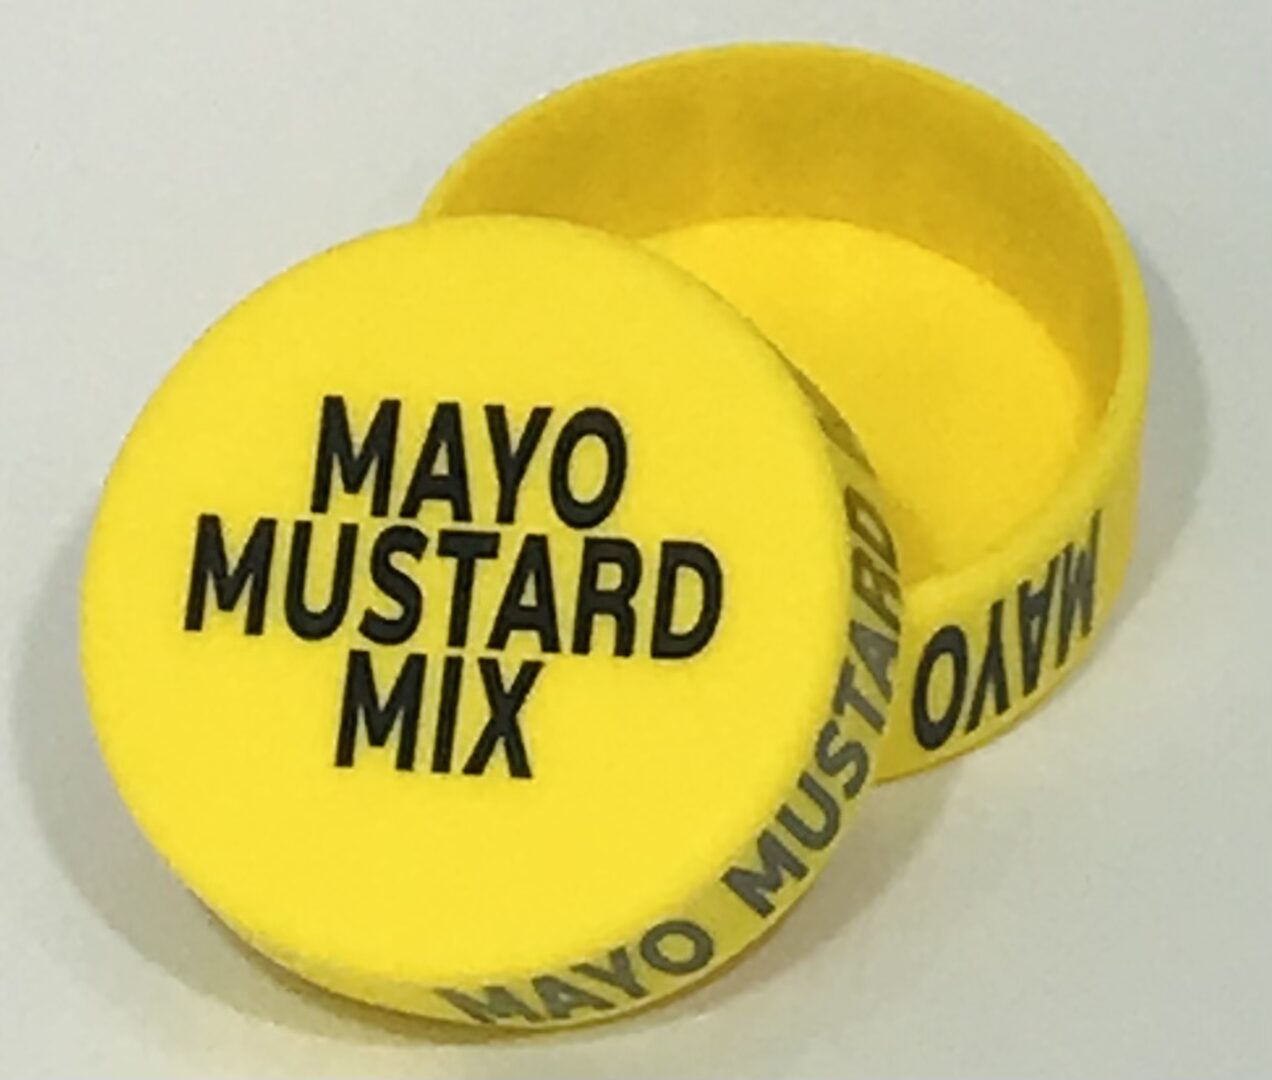 Mayo Mustard Mix